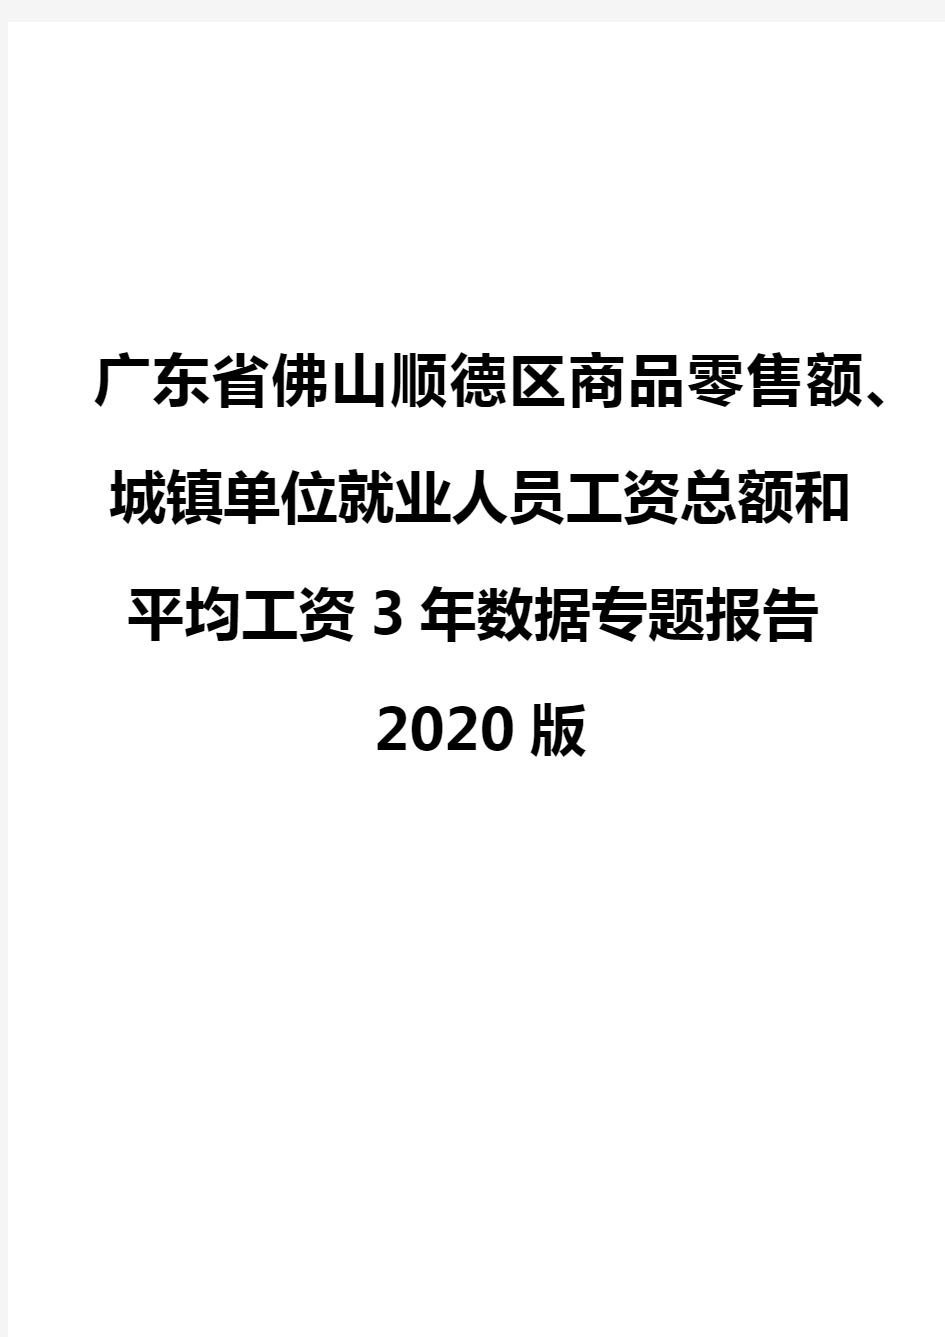 广东省佛山顺德区商品零售额、城镇单位就业人员工资总额和平均工资3年数据专题报告2020版